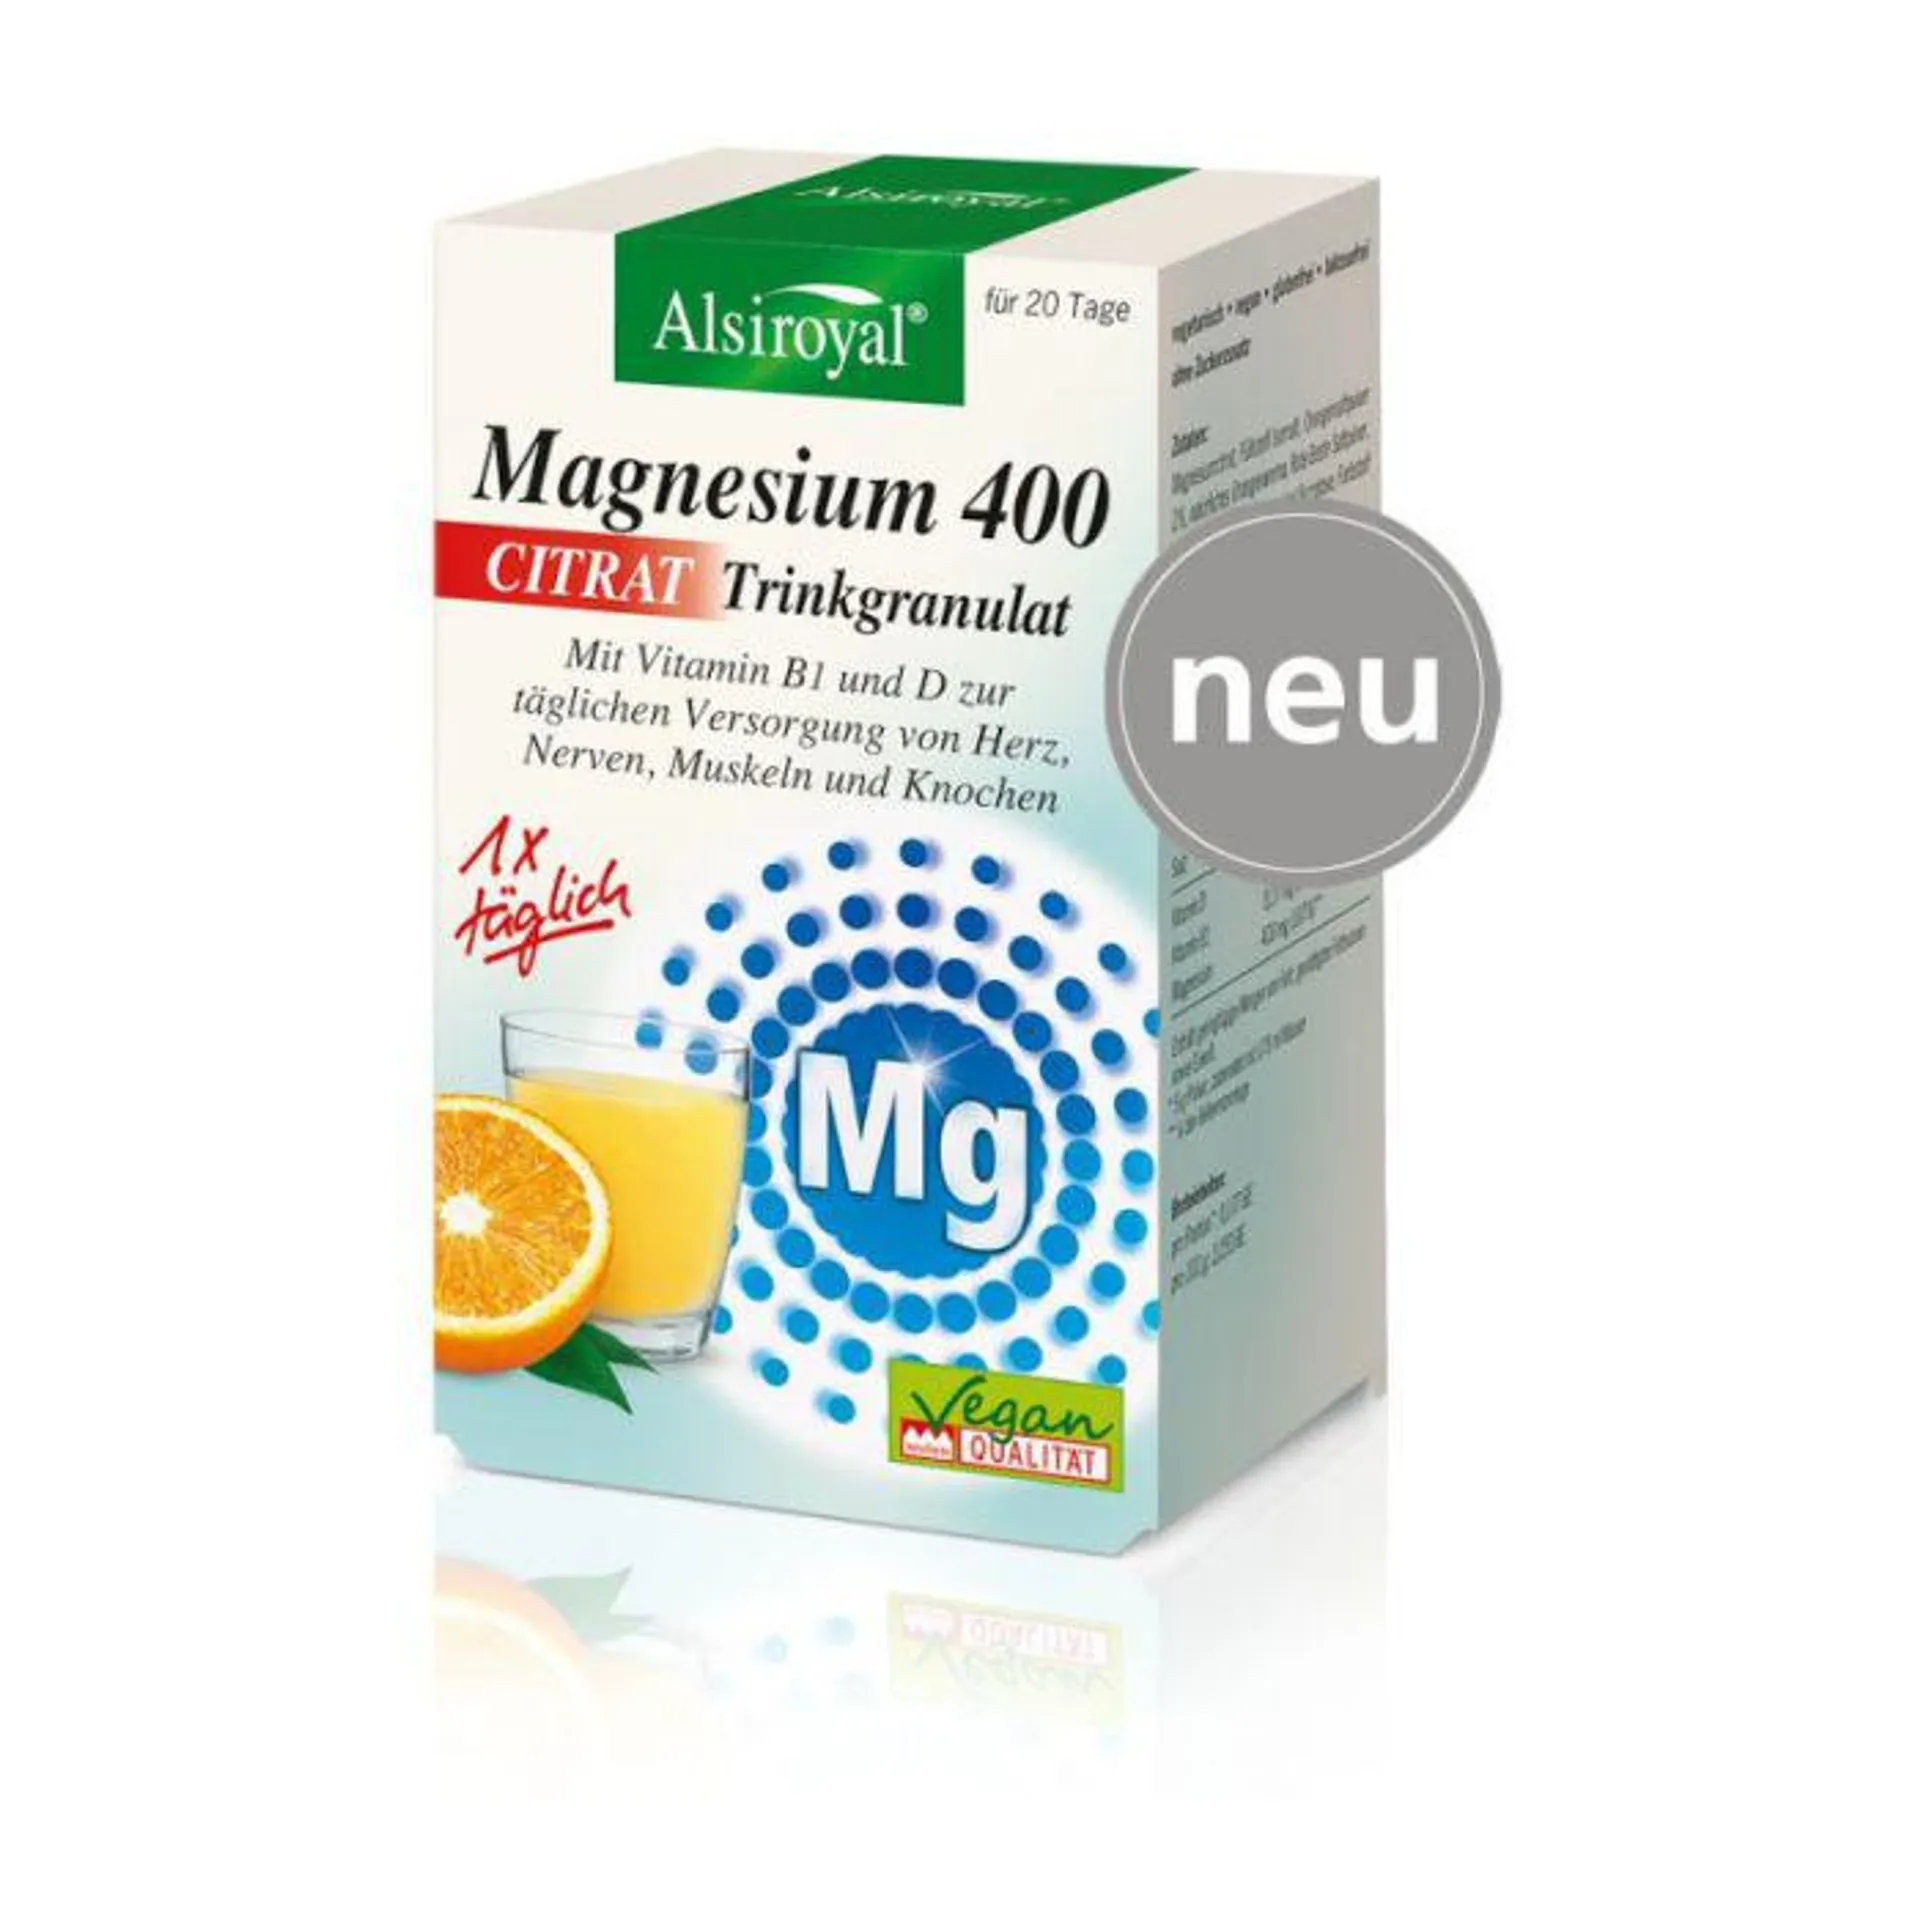 Alsiroyal Magnesium 400 Citrat Trinkgranulat 20Stk